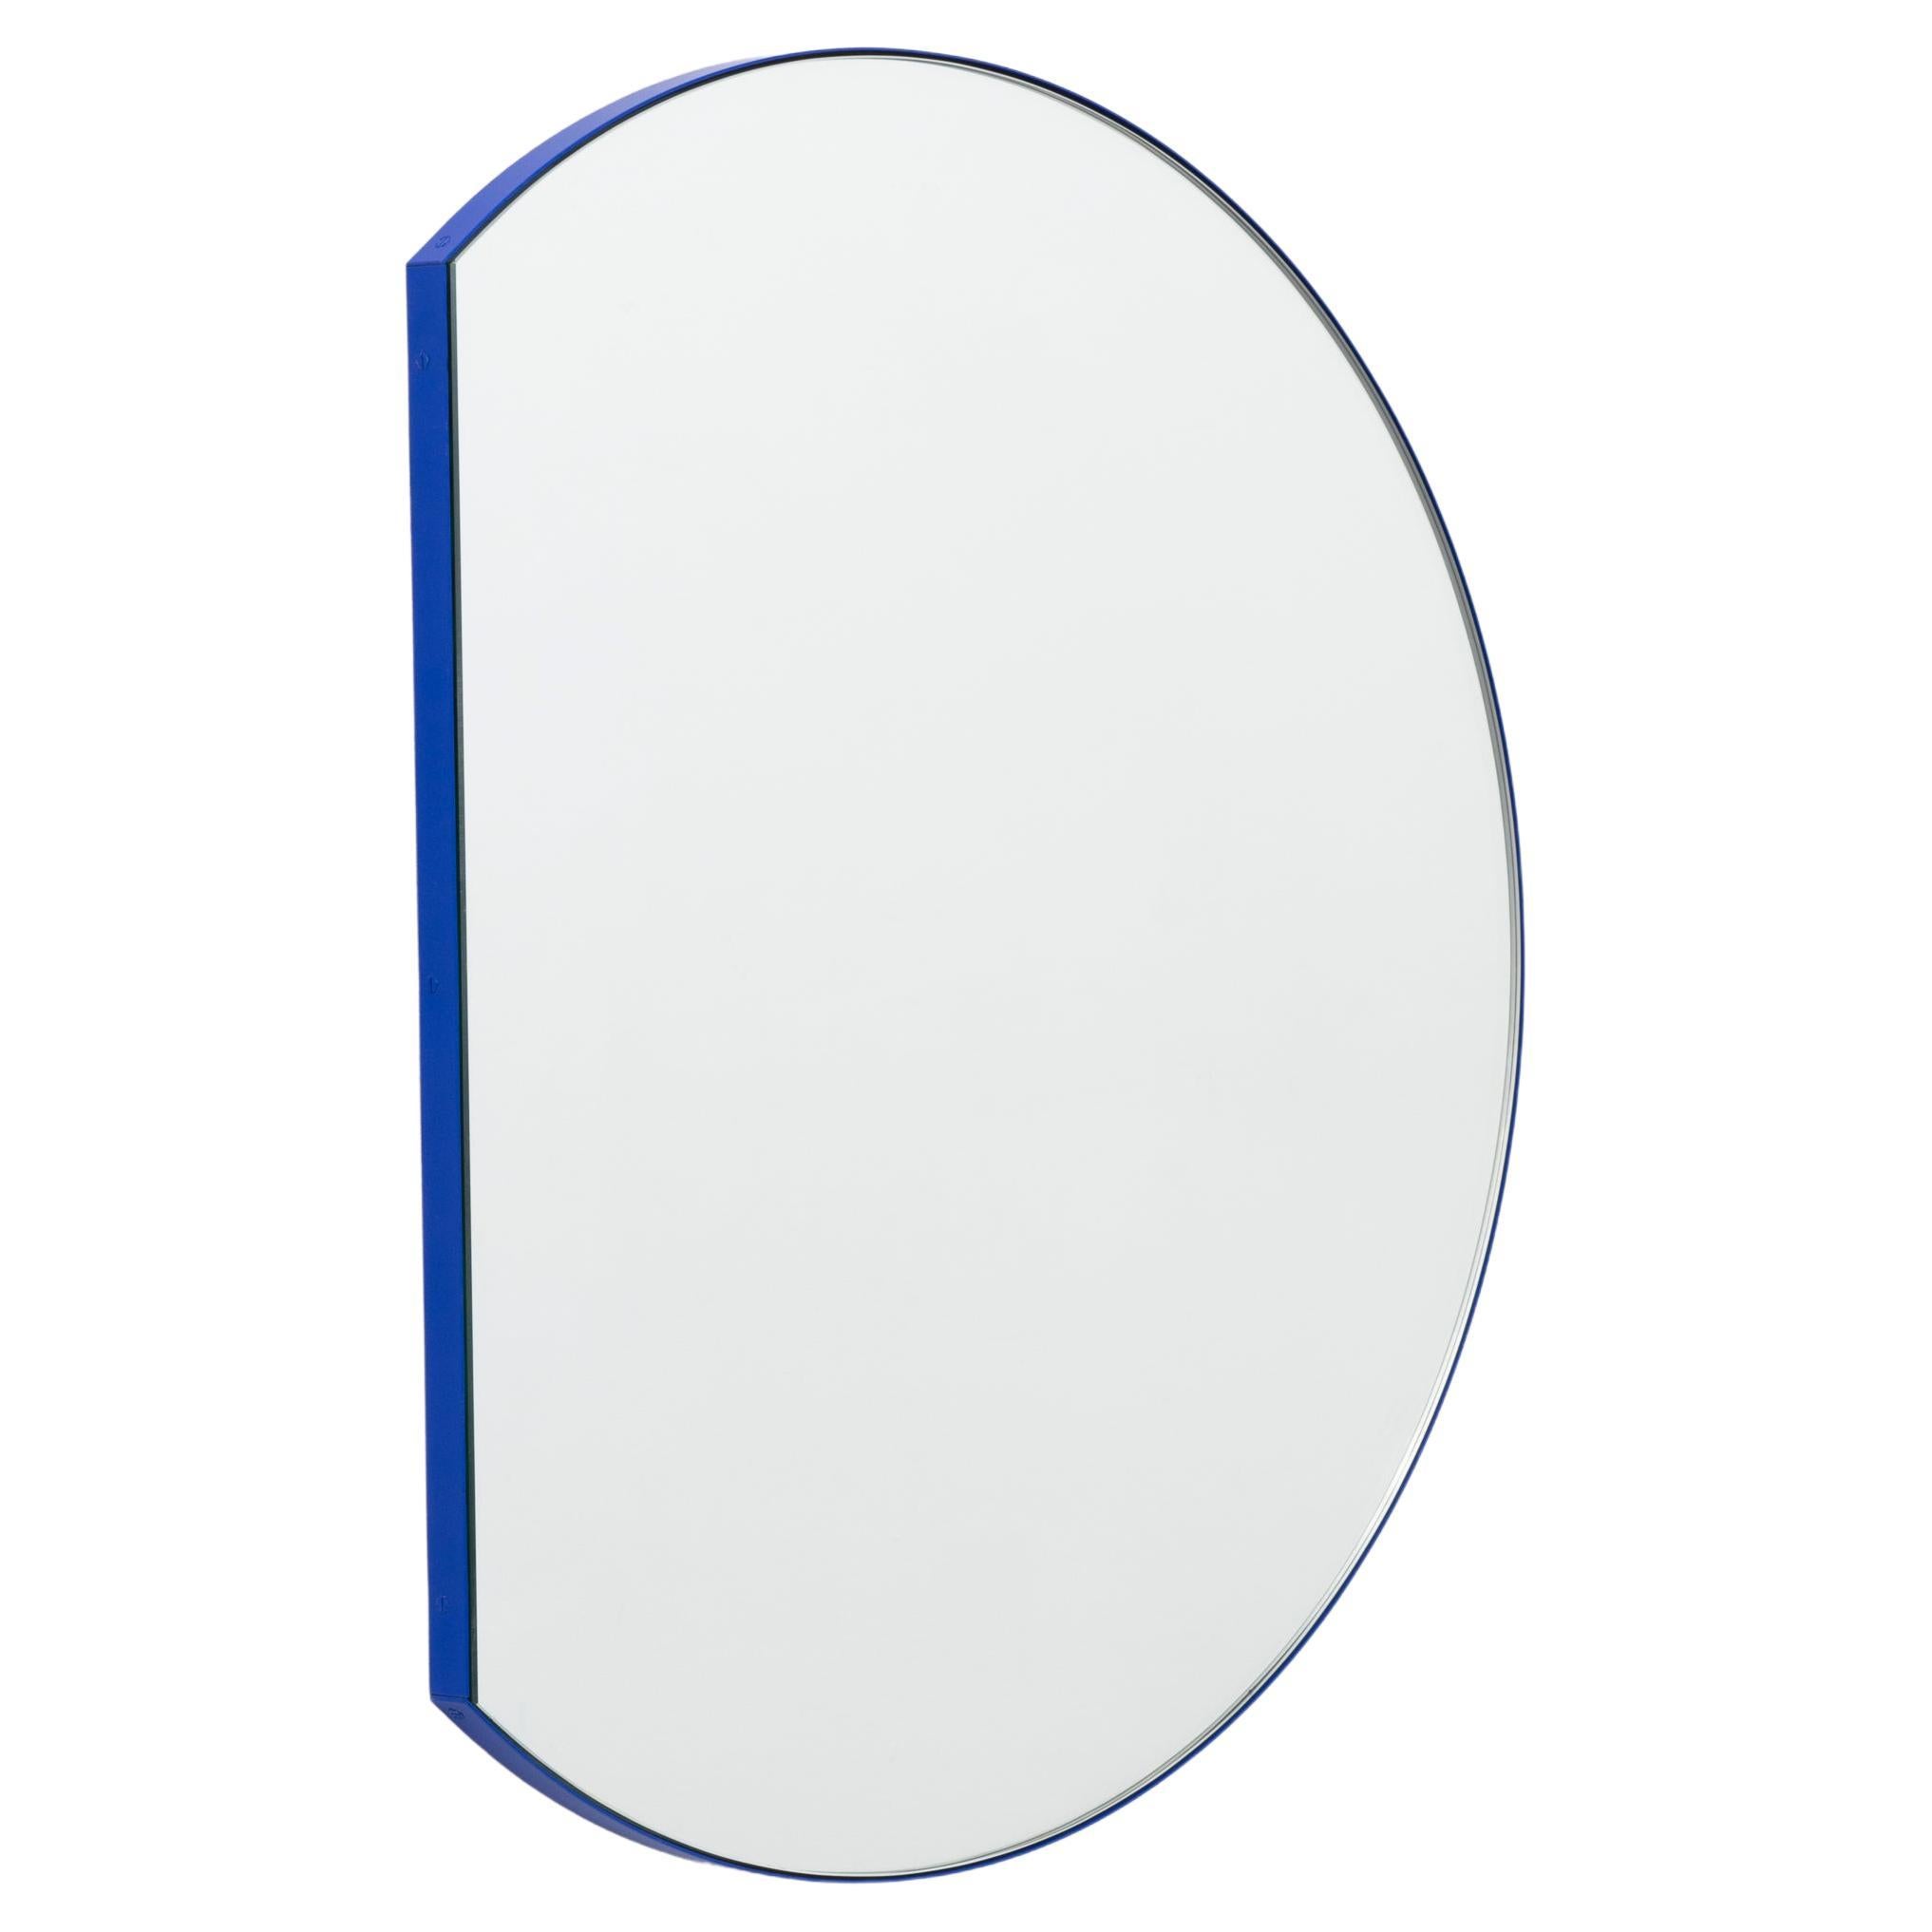 Orbis Trecus Cropped Round Modern Mirror with Blue Frame,Bespoke,Medium